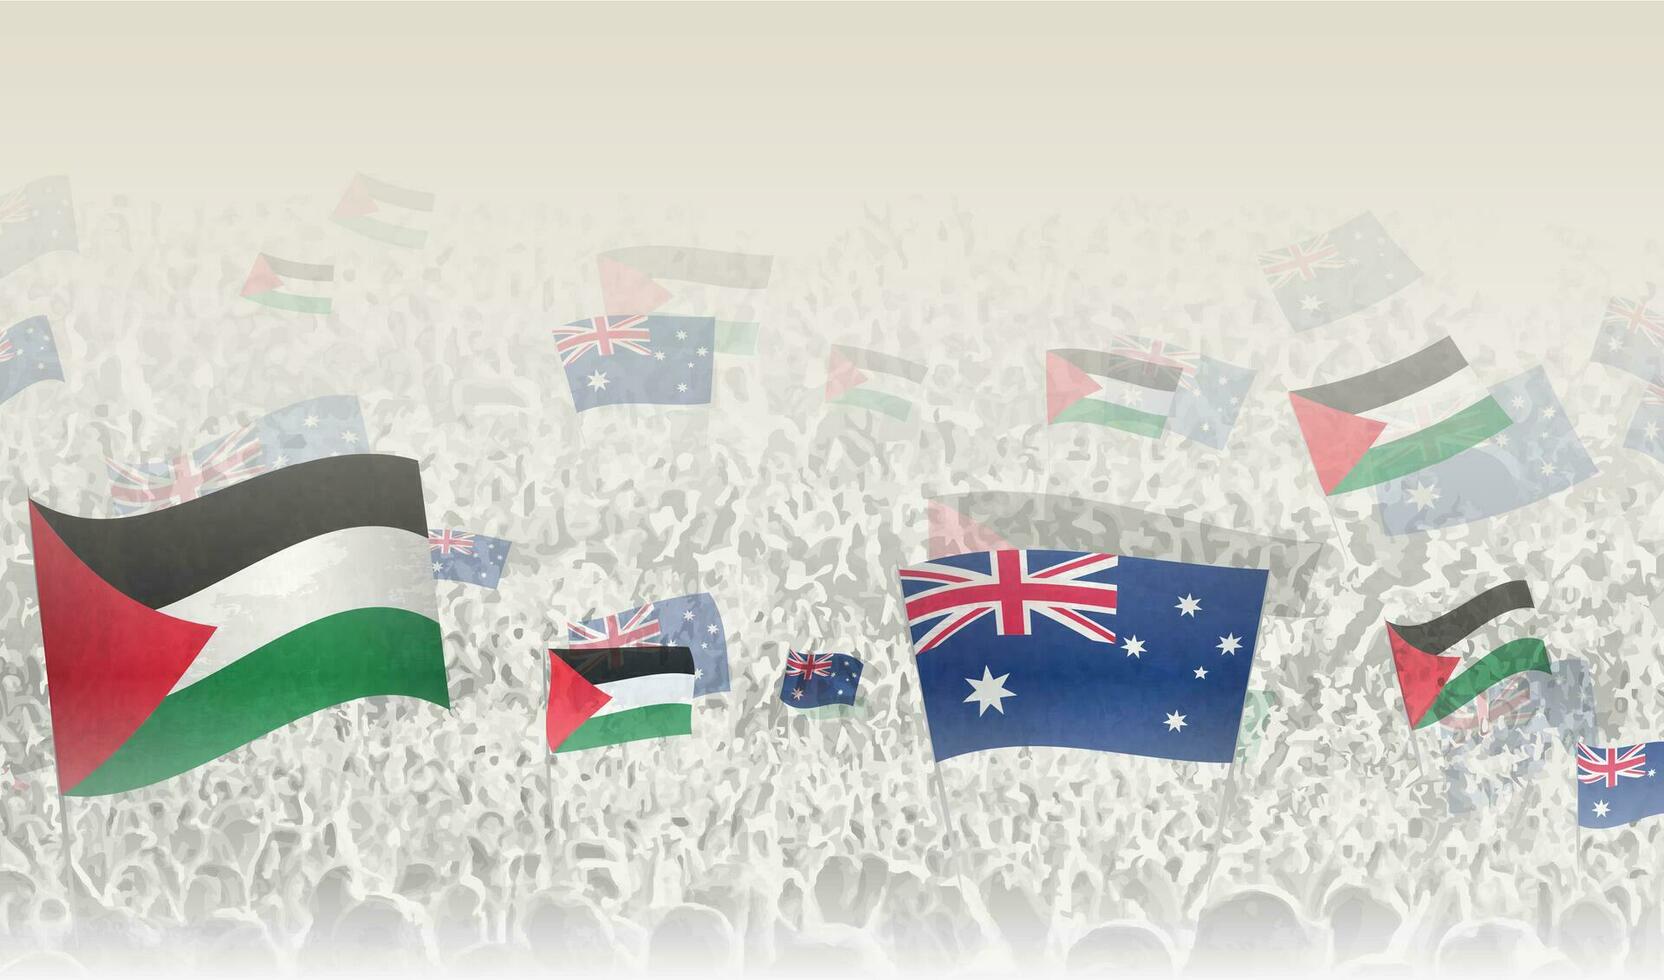 Palästina und Australien Flaggen im ein Menge von Jubel Personen. vektor